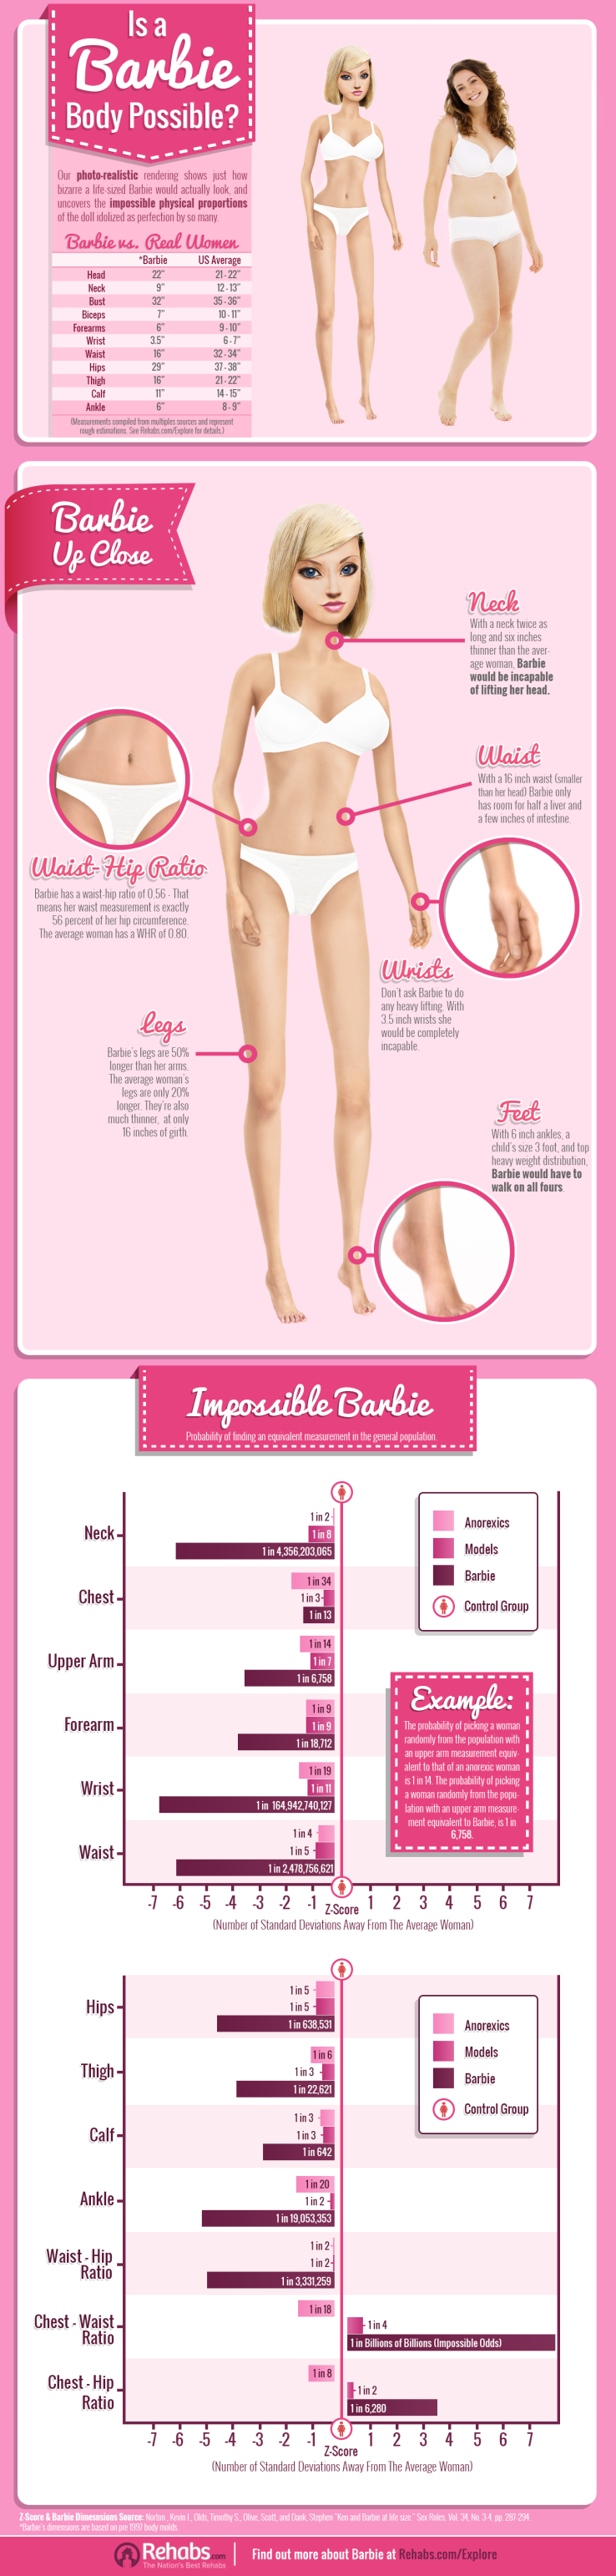 infographie-barbieinreallife